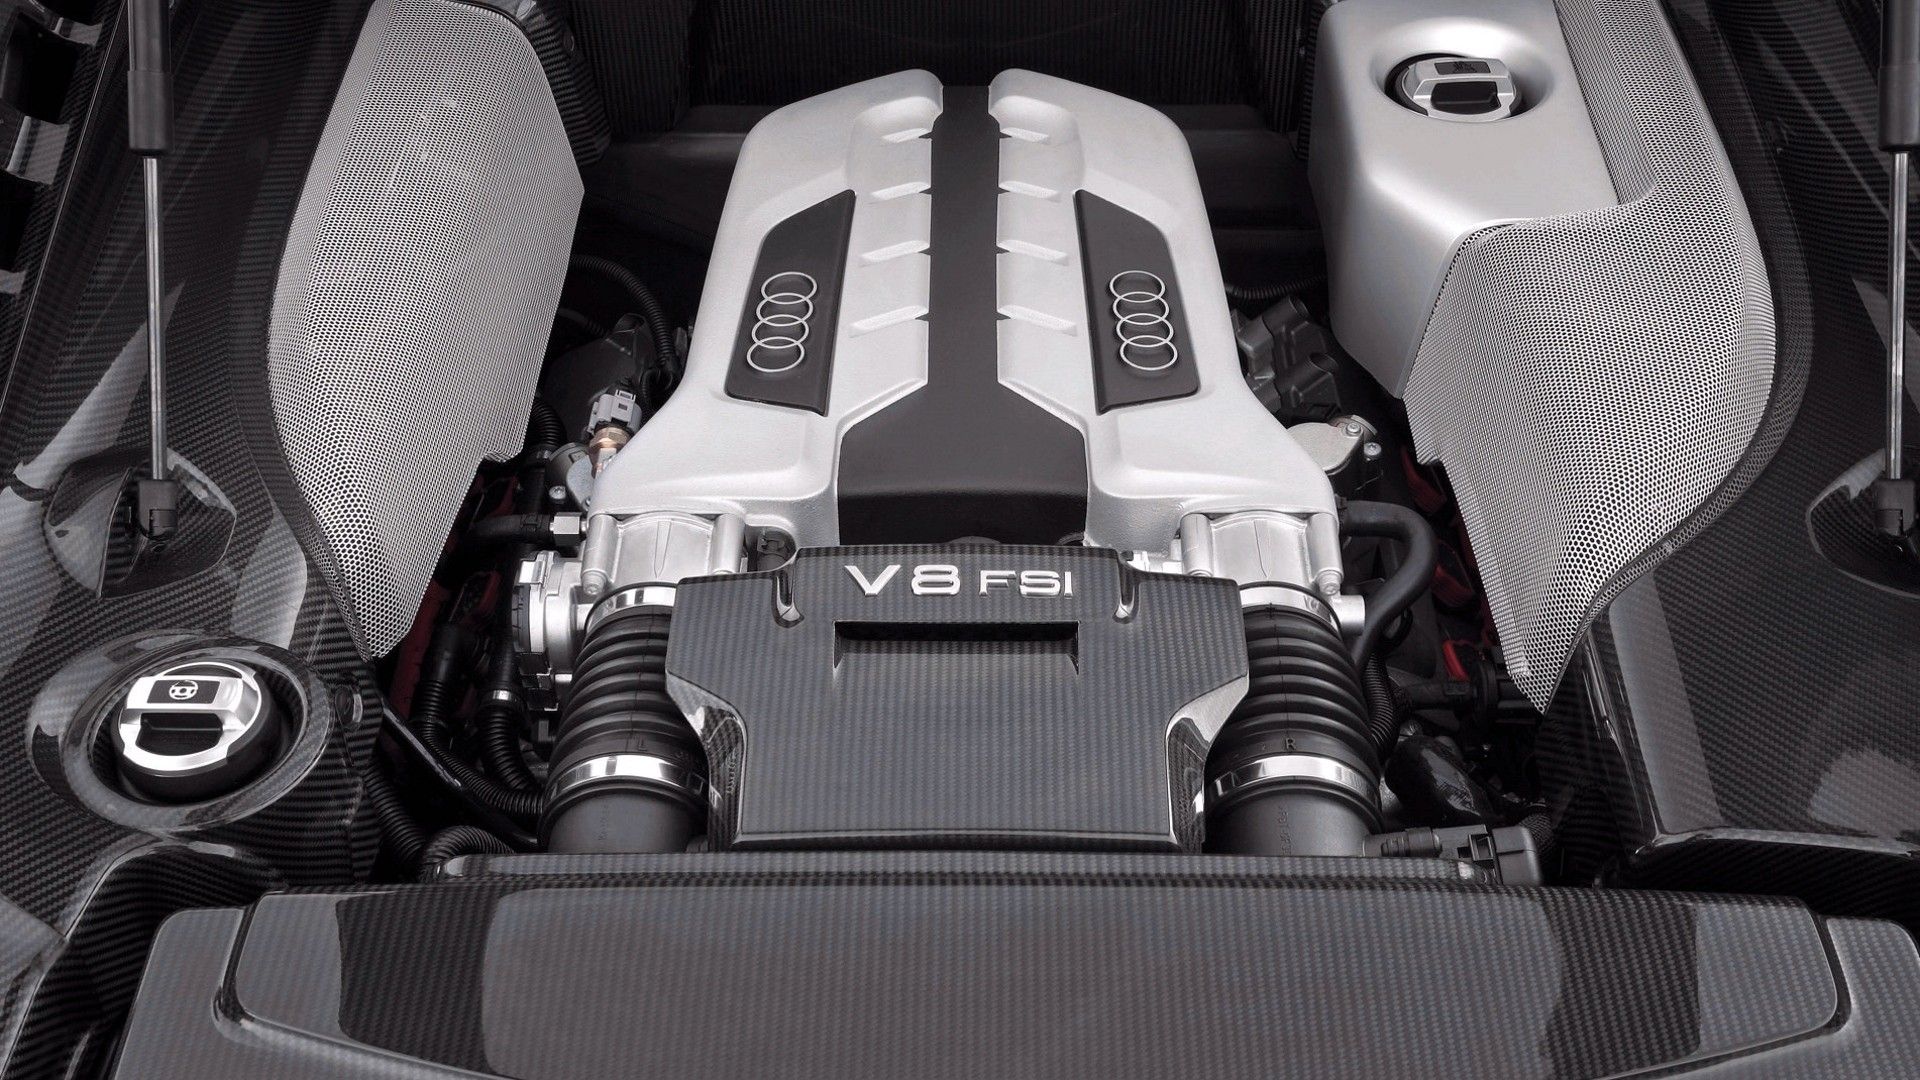 Audi Wallpaper Engine V8 Fsi Background HD